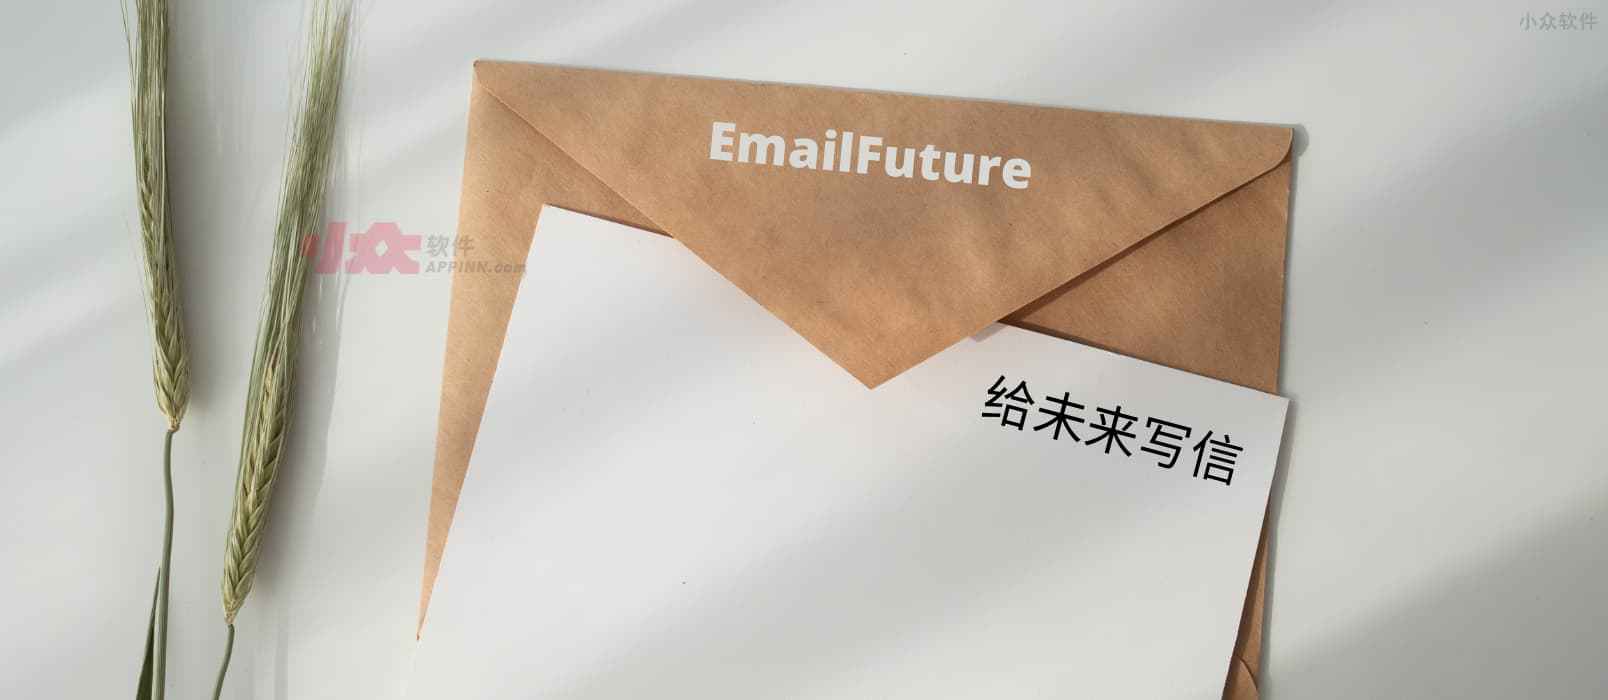 EmailFuture – 给未来的自己或他人写信，出其不意的惊喜